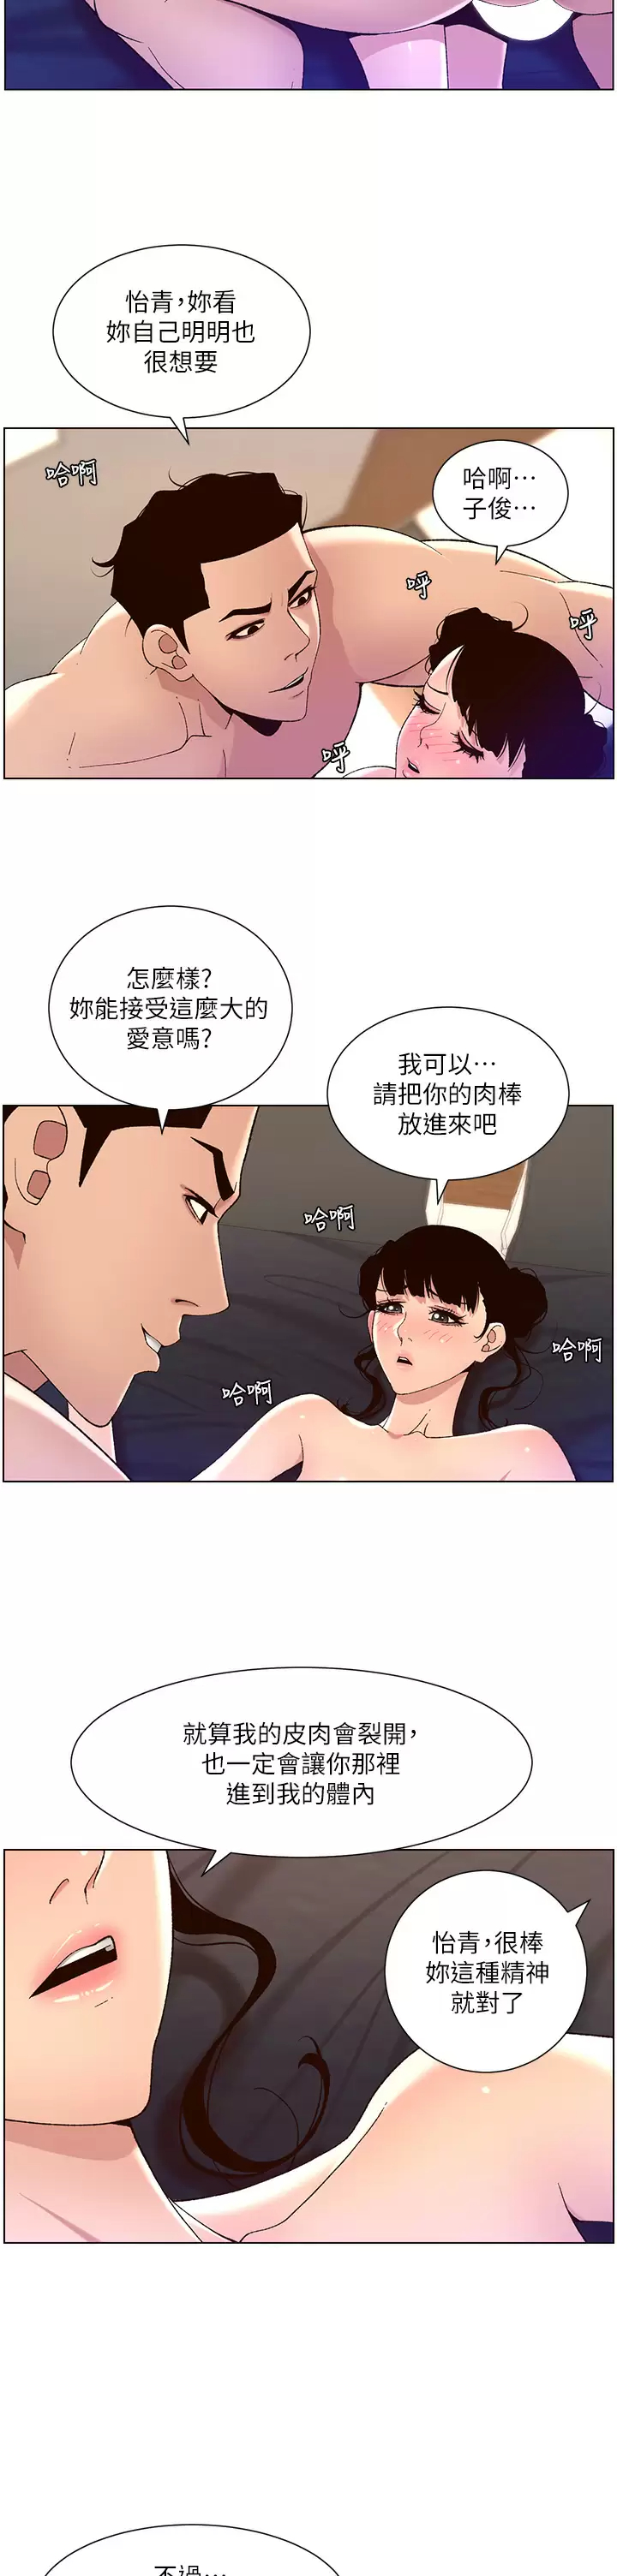 韩国污漫画 帝王App 第41话 让女人爽翻天的新招式! 7